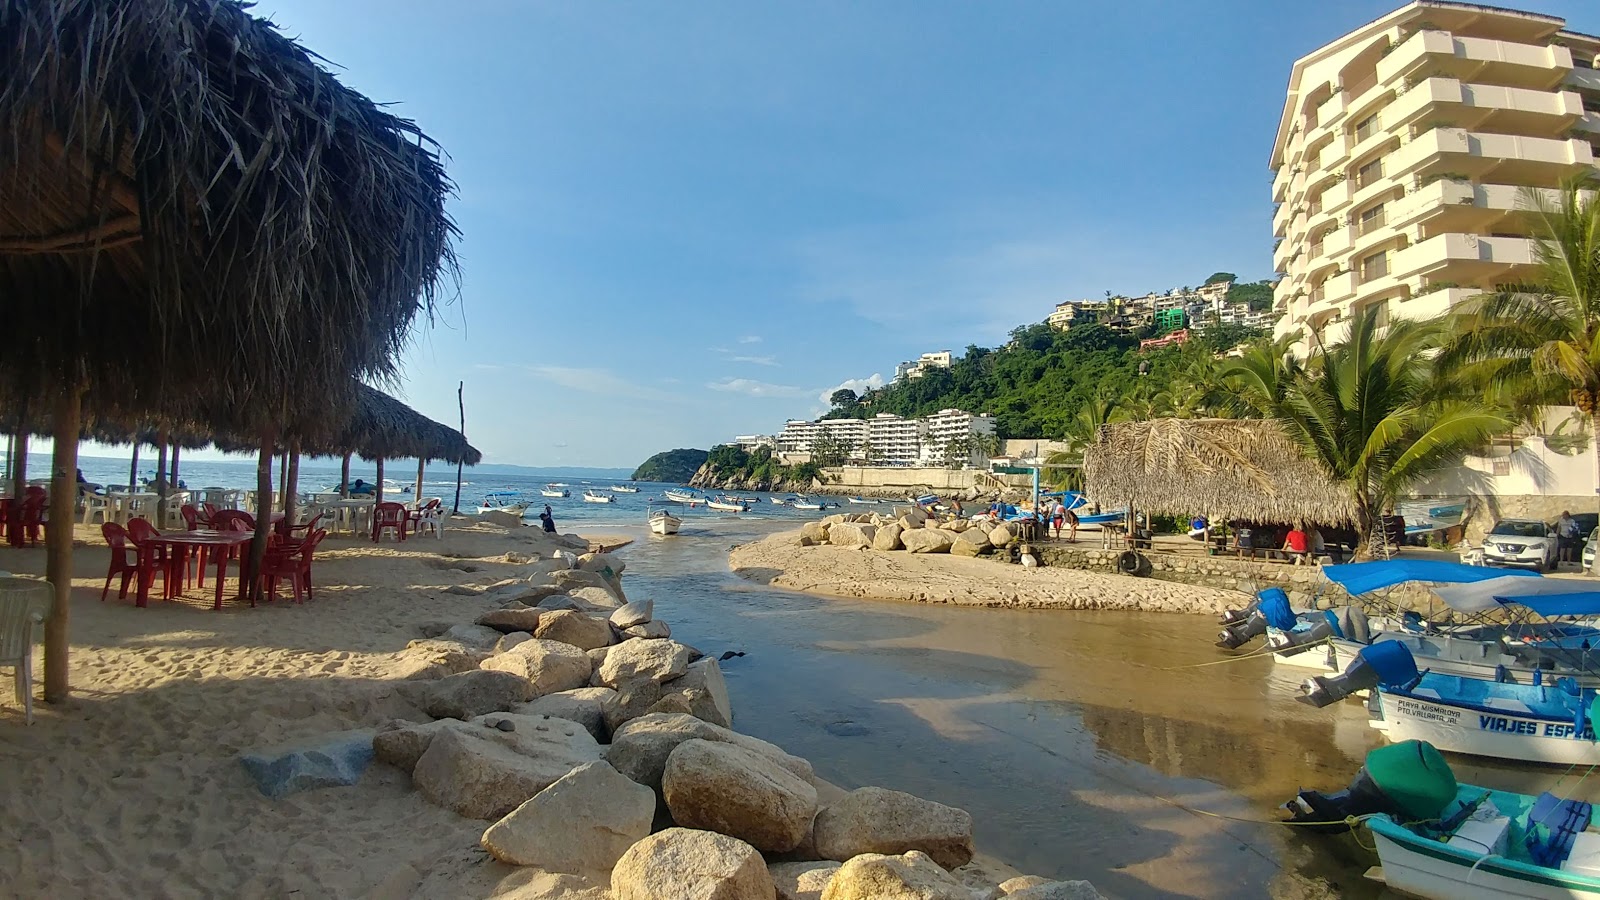 Foto af Mismaloya beach - populært sted blandt afslapningskendere